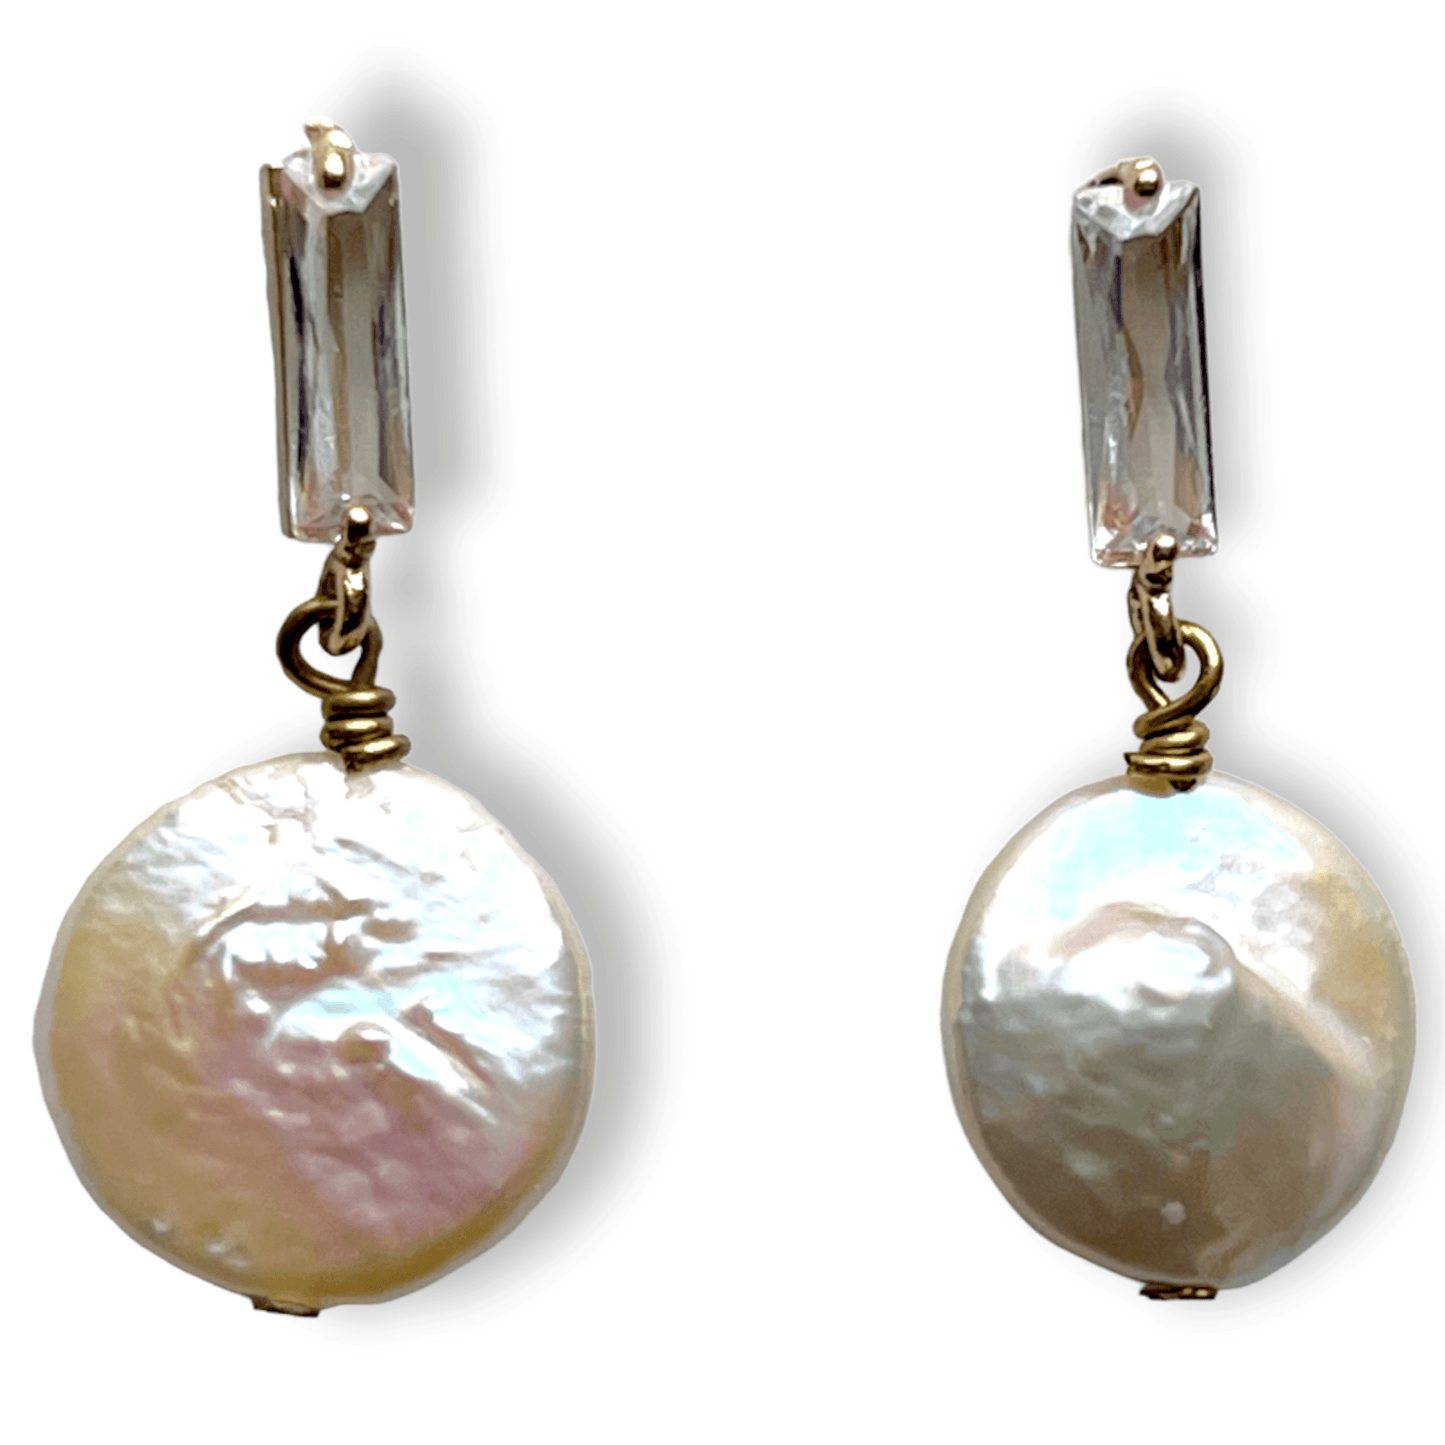 Keishi pearl drop earrings in a modern settingSundara Joon